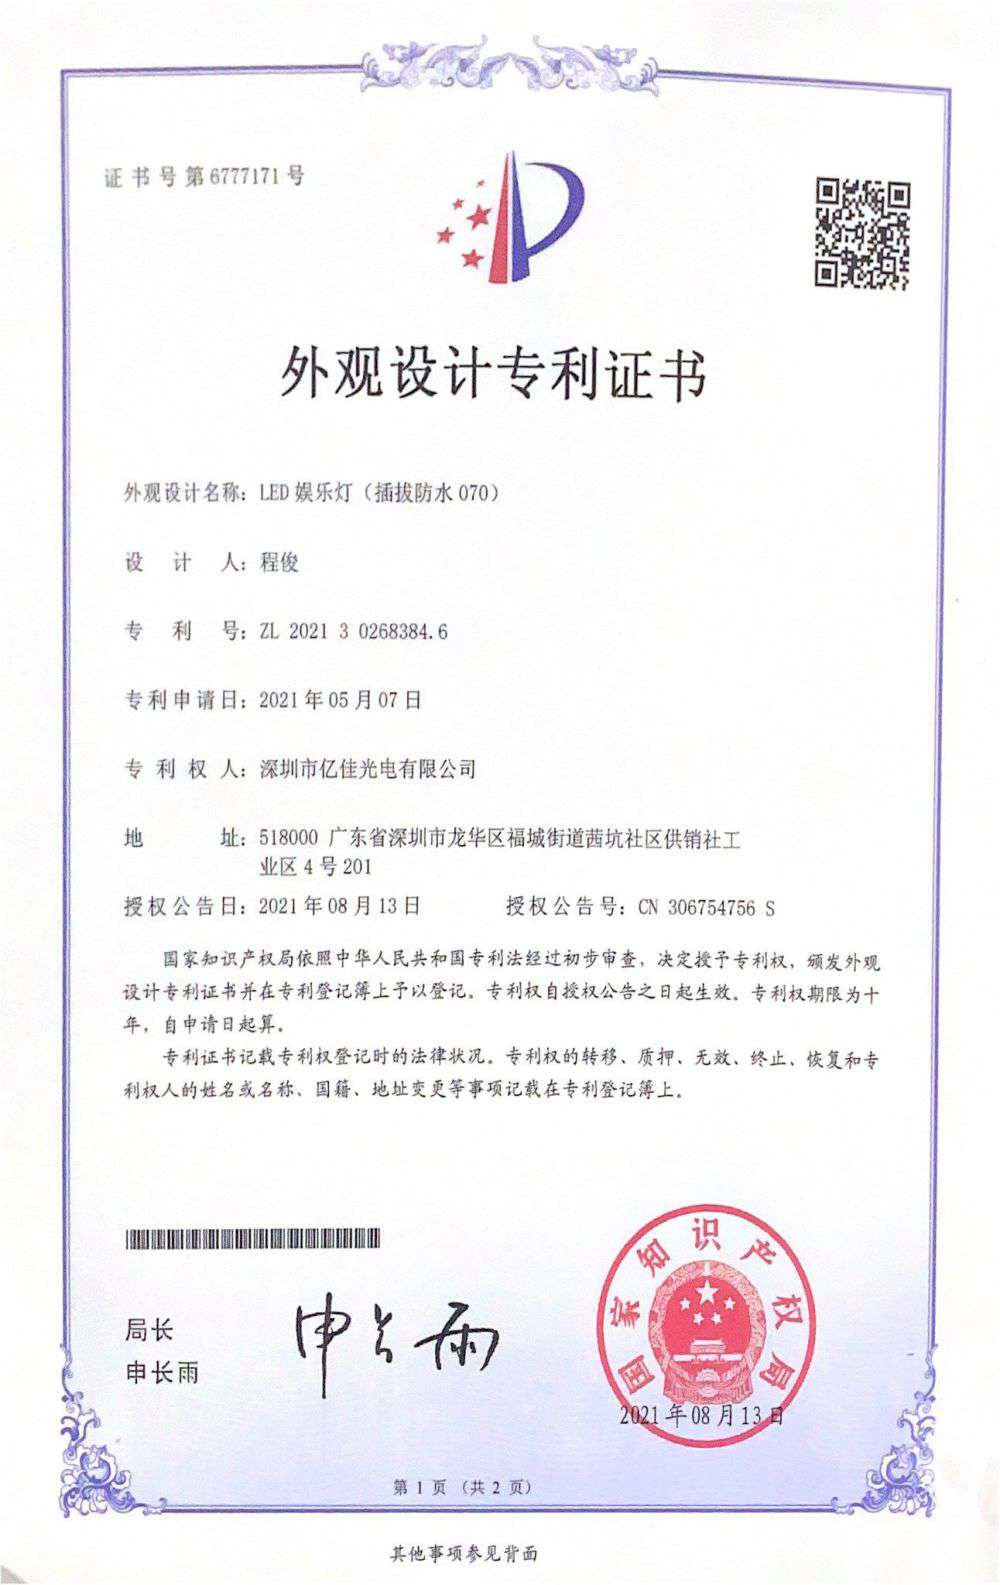 深圳市大宝娱乐光电有限公司LED娱乐灯070获得外观设计专利证书